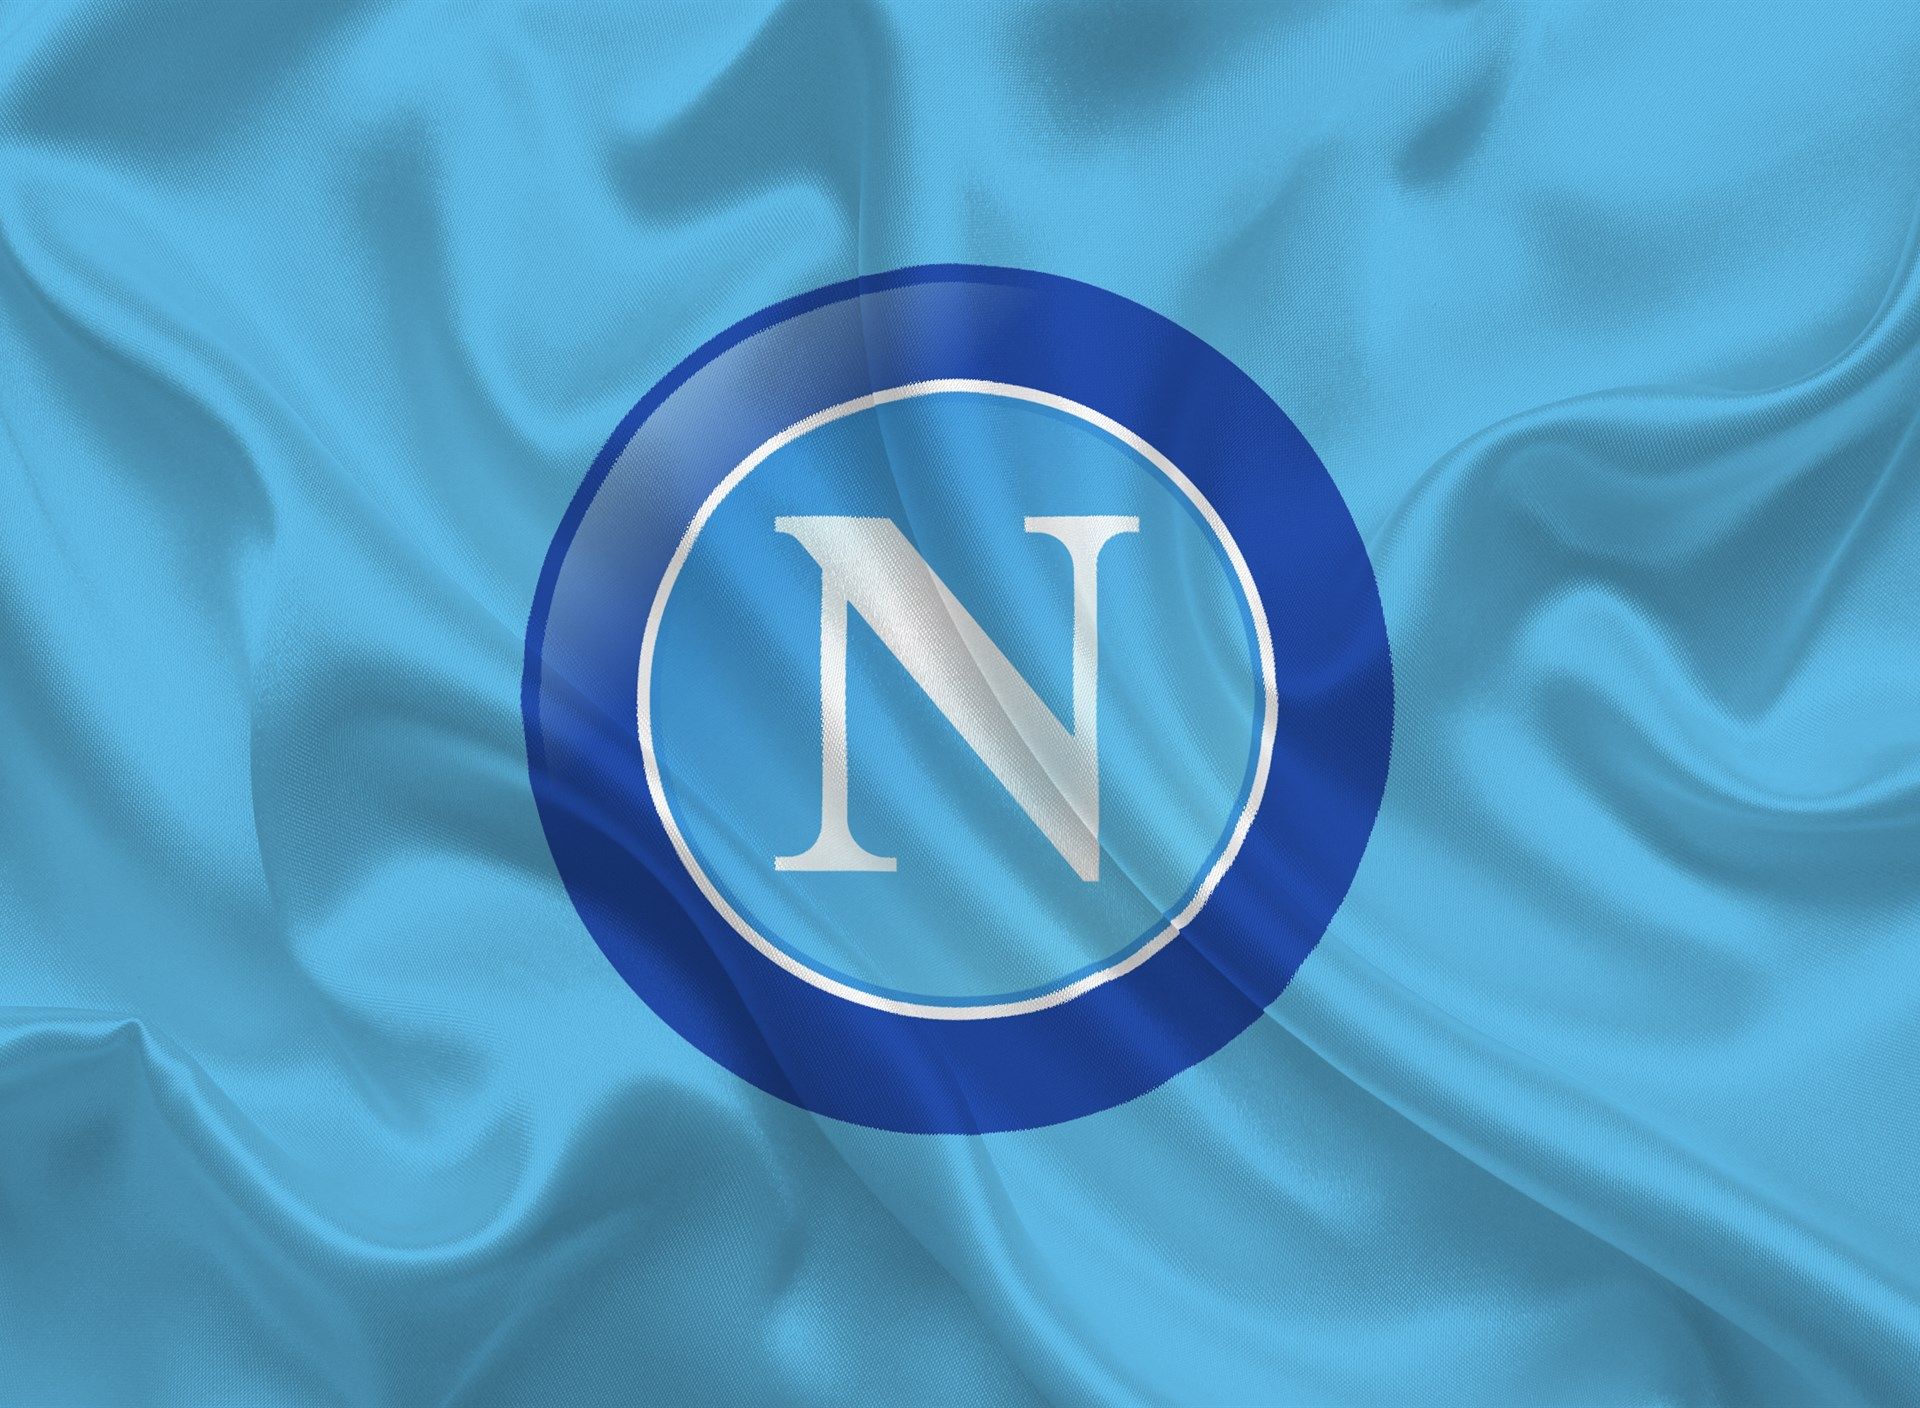 Naples - Mercato : un défenseur entre l'AS Rome, Everton et le Milan AC